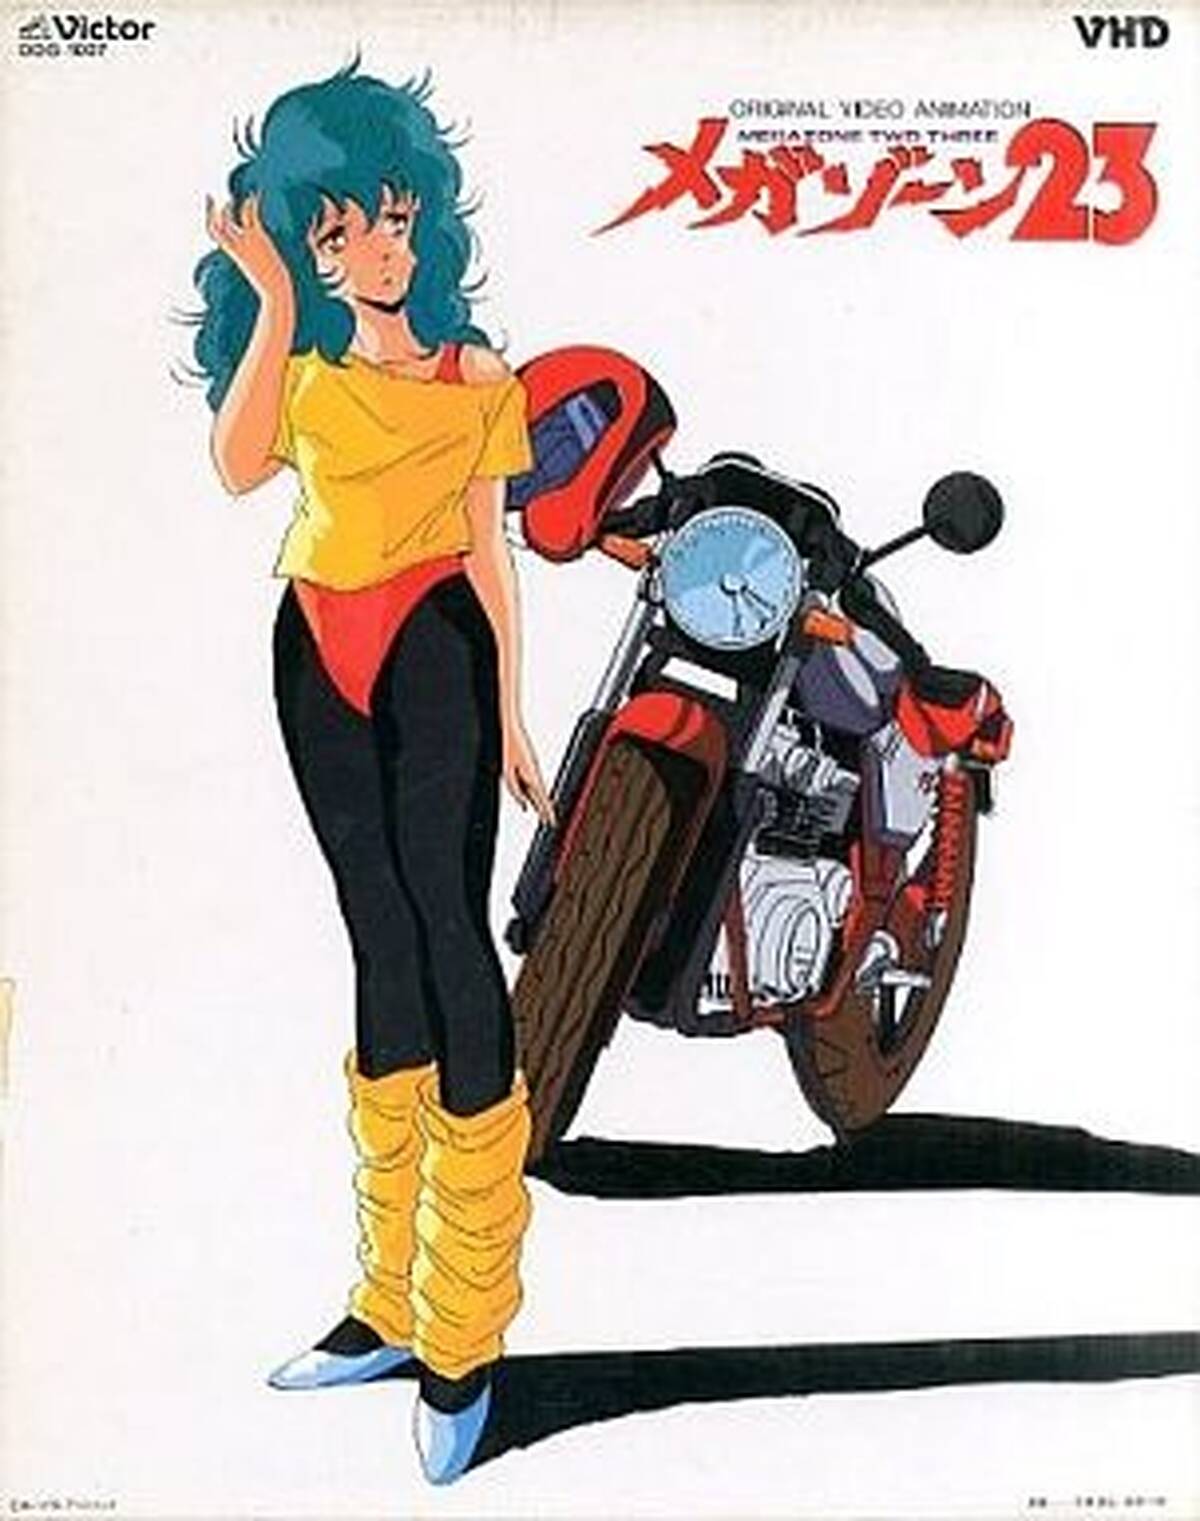 懐かしアニメ回顧録第9回 30年前の いちばんいい時代 を描いた メガゾーン23 は 単なる懐古趣味とは言い切れない アキバ総研